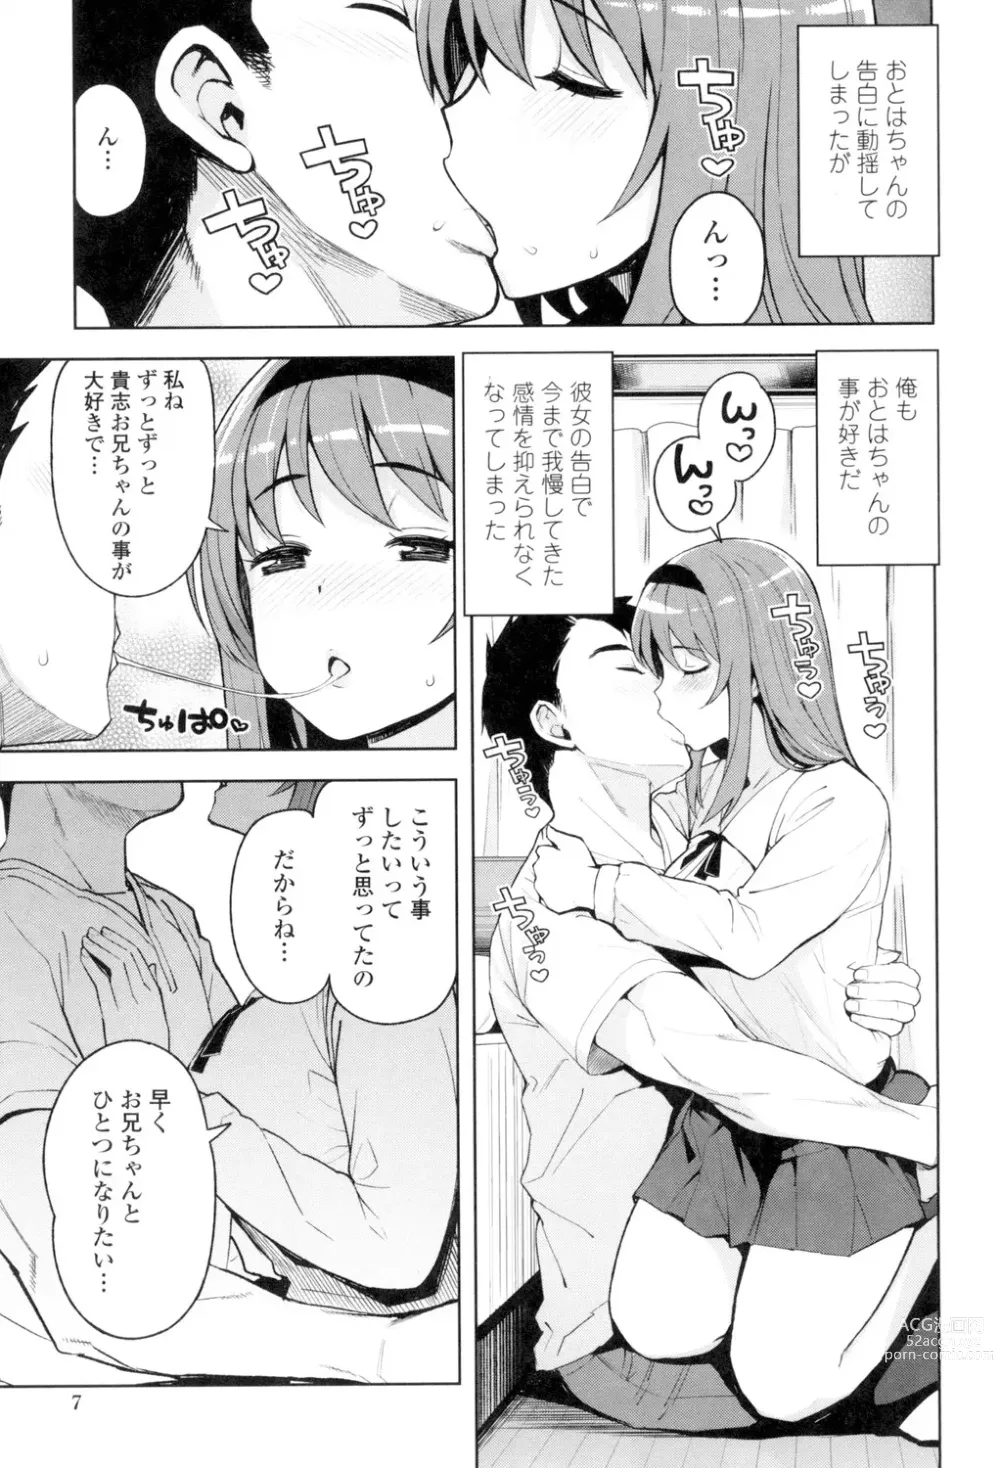 Page 8 of manga Caramel Hame-Art